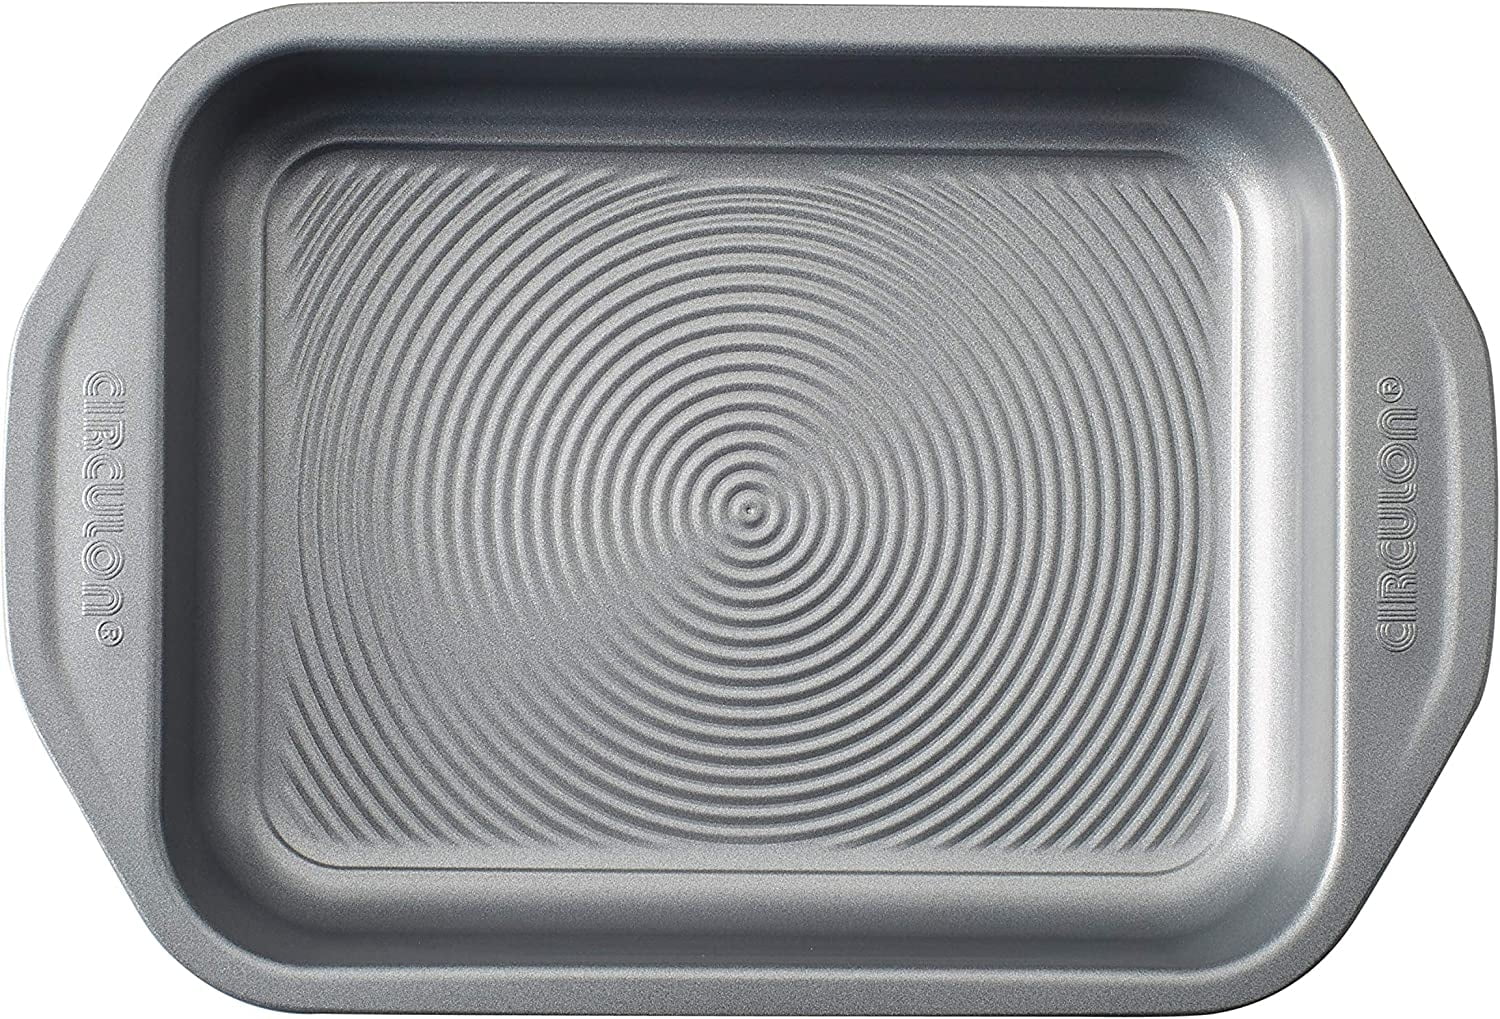 Circulon 6-Piece Total Nonstick Bakeware Set